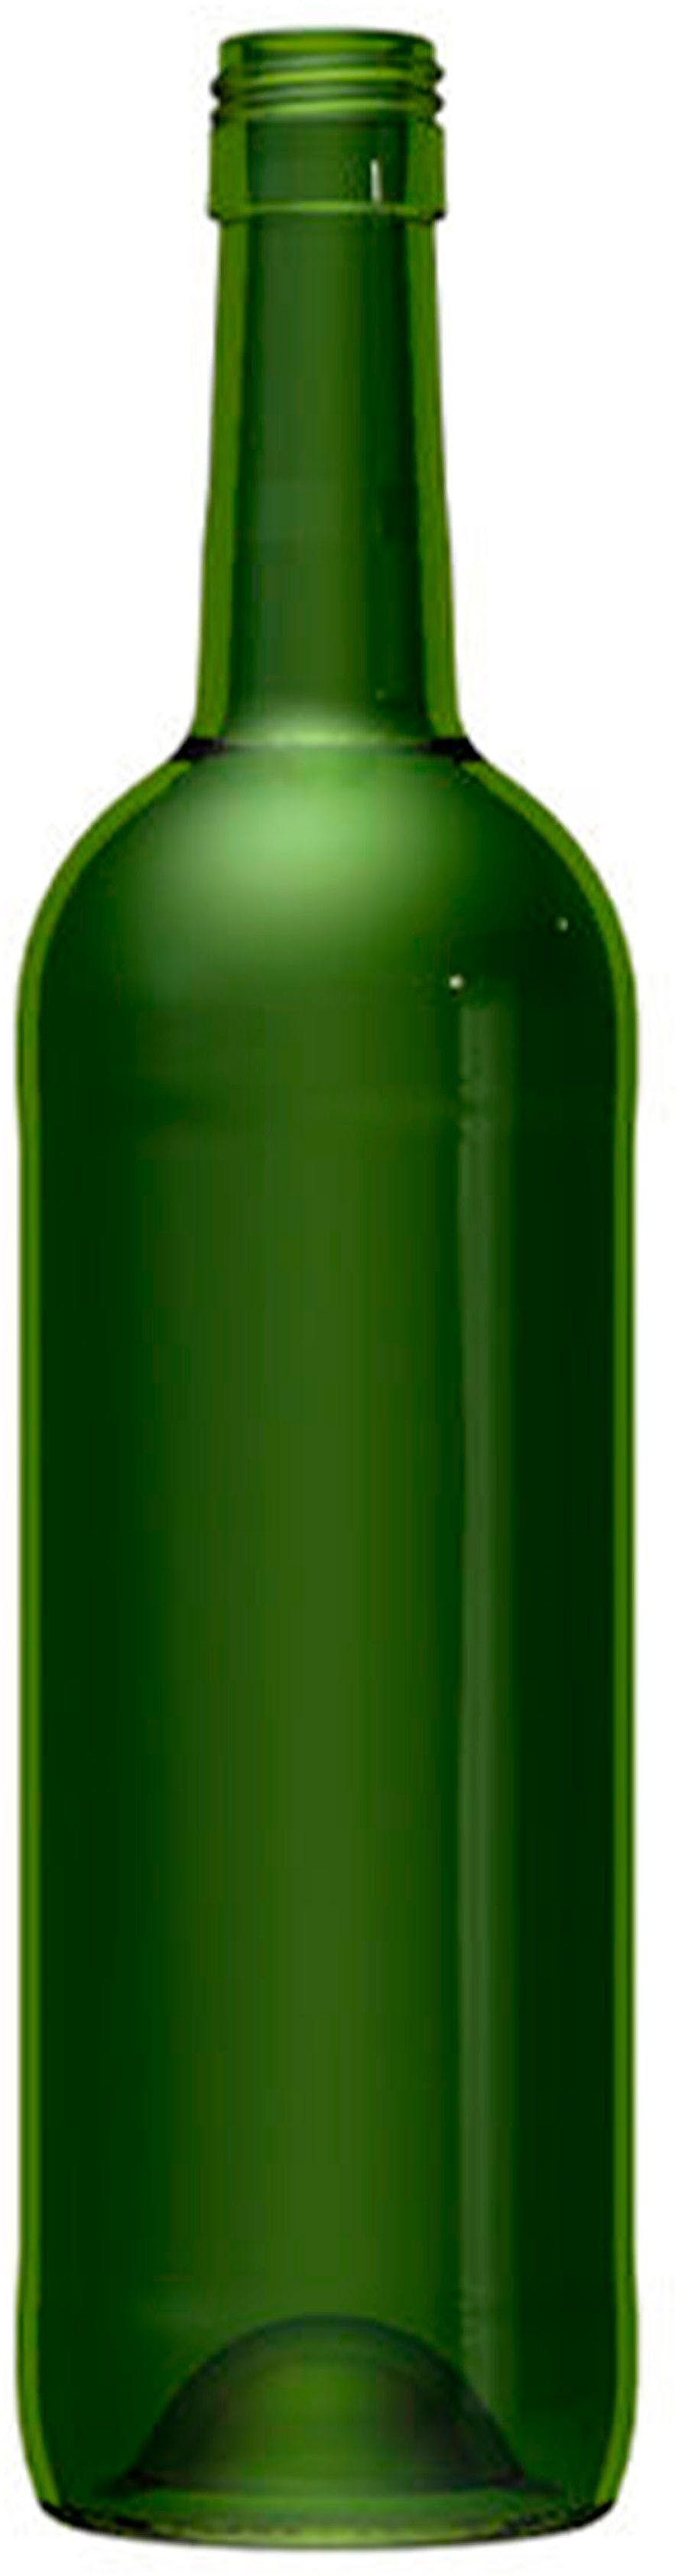 Garrafa Bordéus   STD 750 ml BG-Rosca